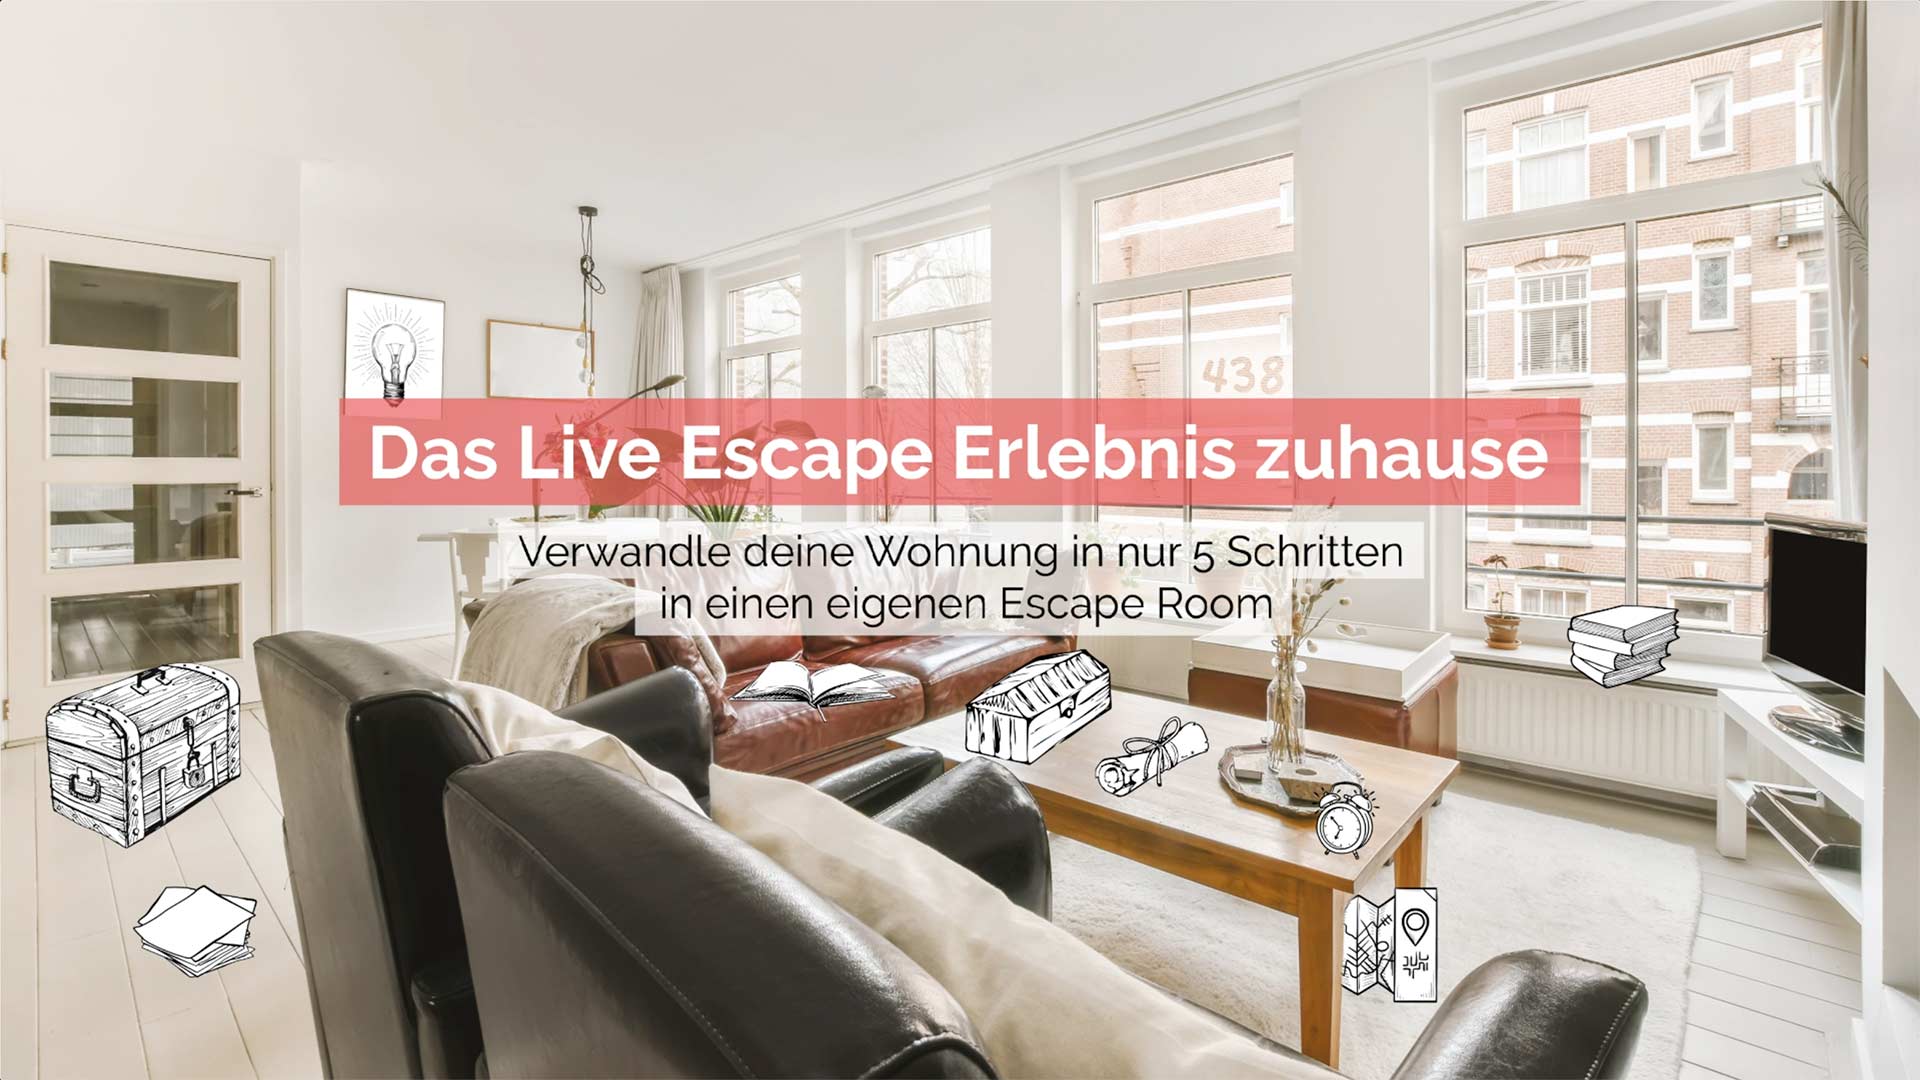 Das Live Escape Erlebnis Zuhause - Verwandle deine Wohnung in nur 5 Schritten in einen Escape Room